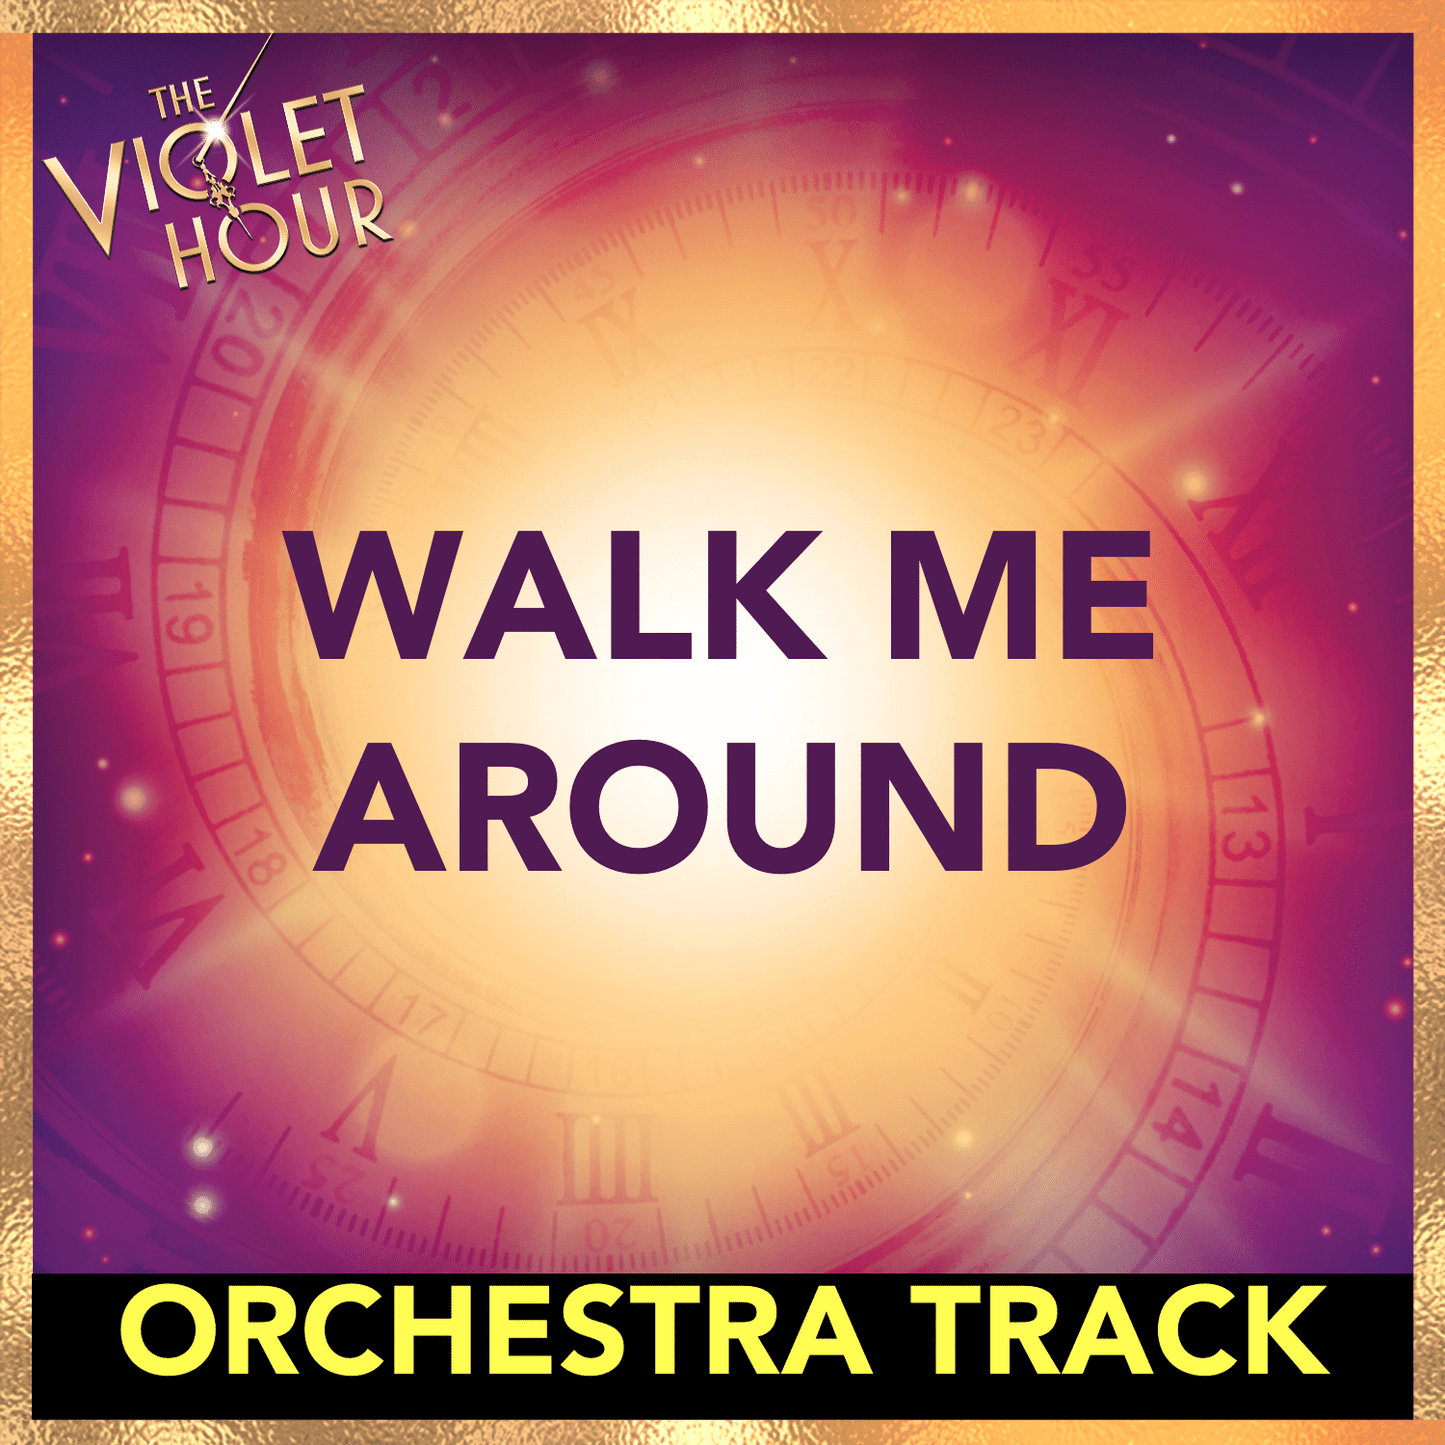 WALK ME AROUND (Orchestra Track)